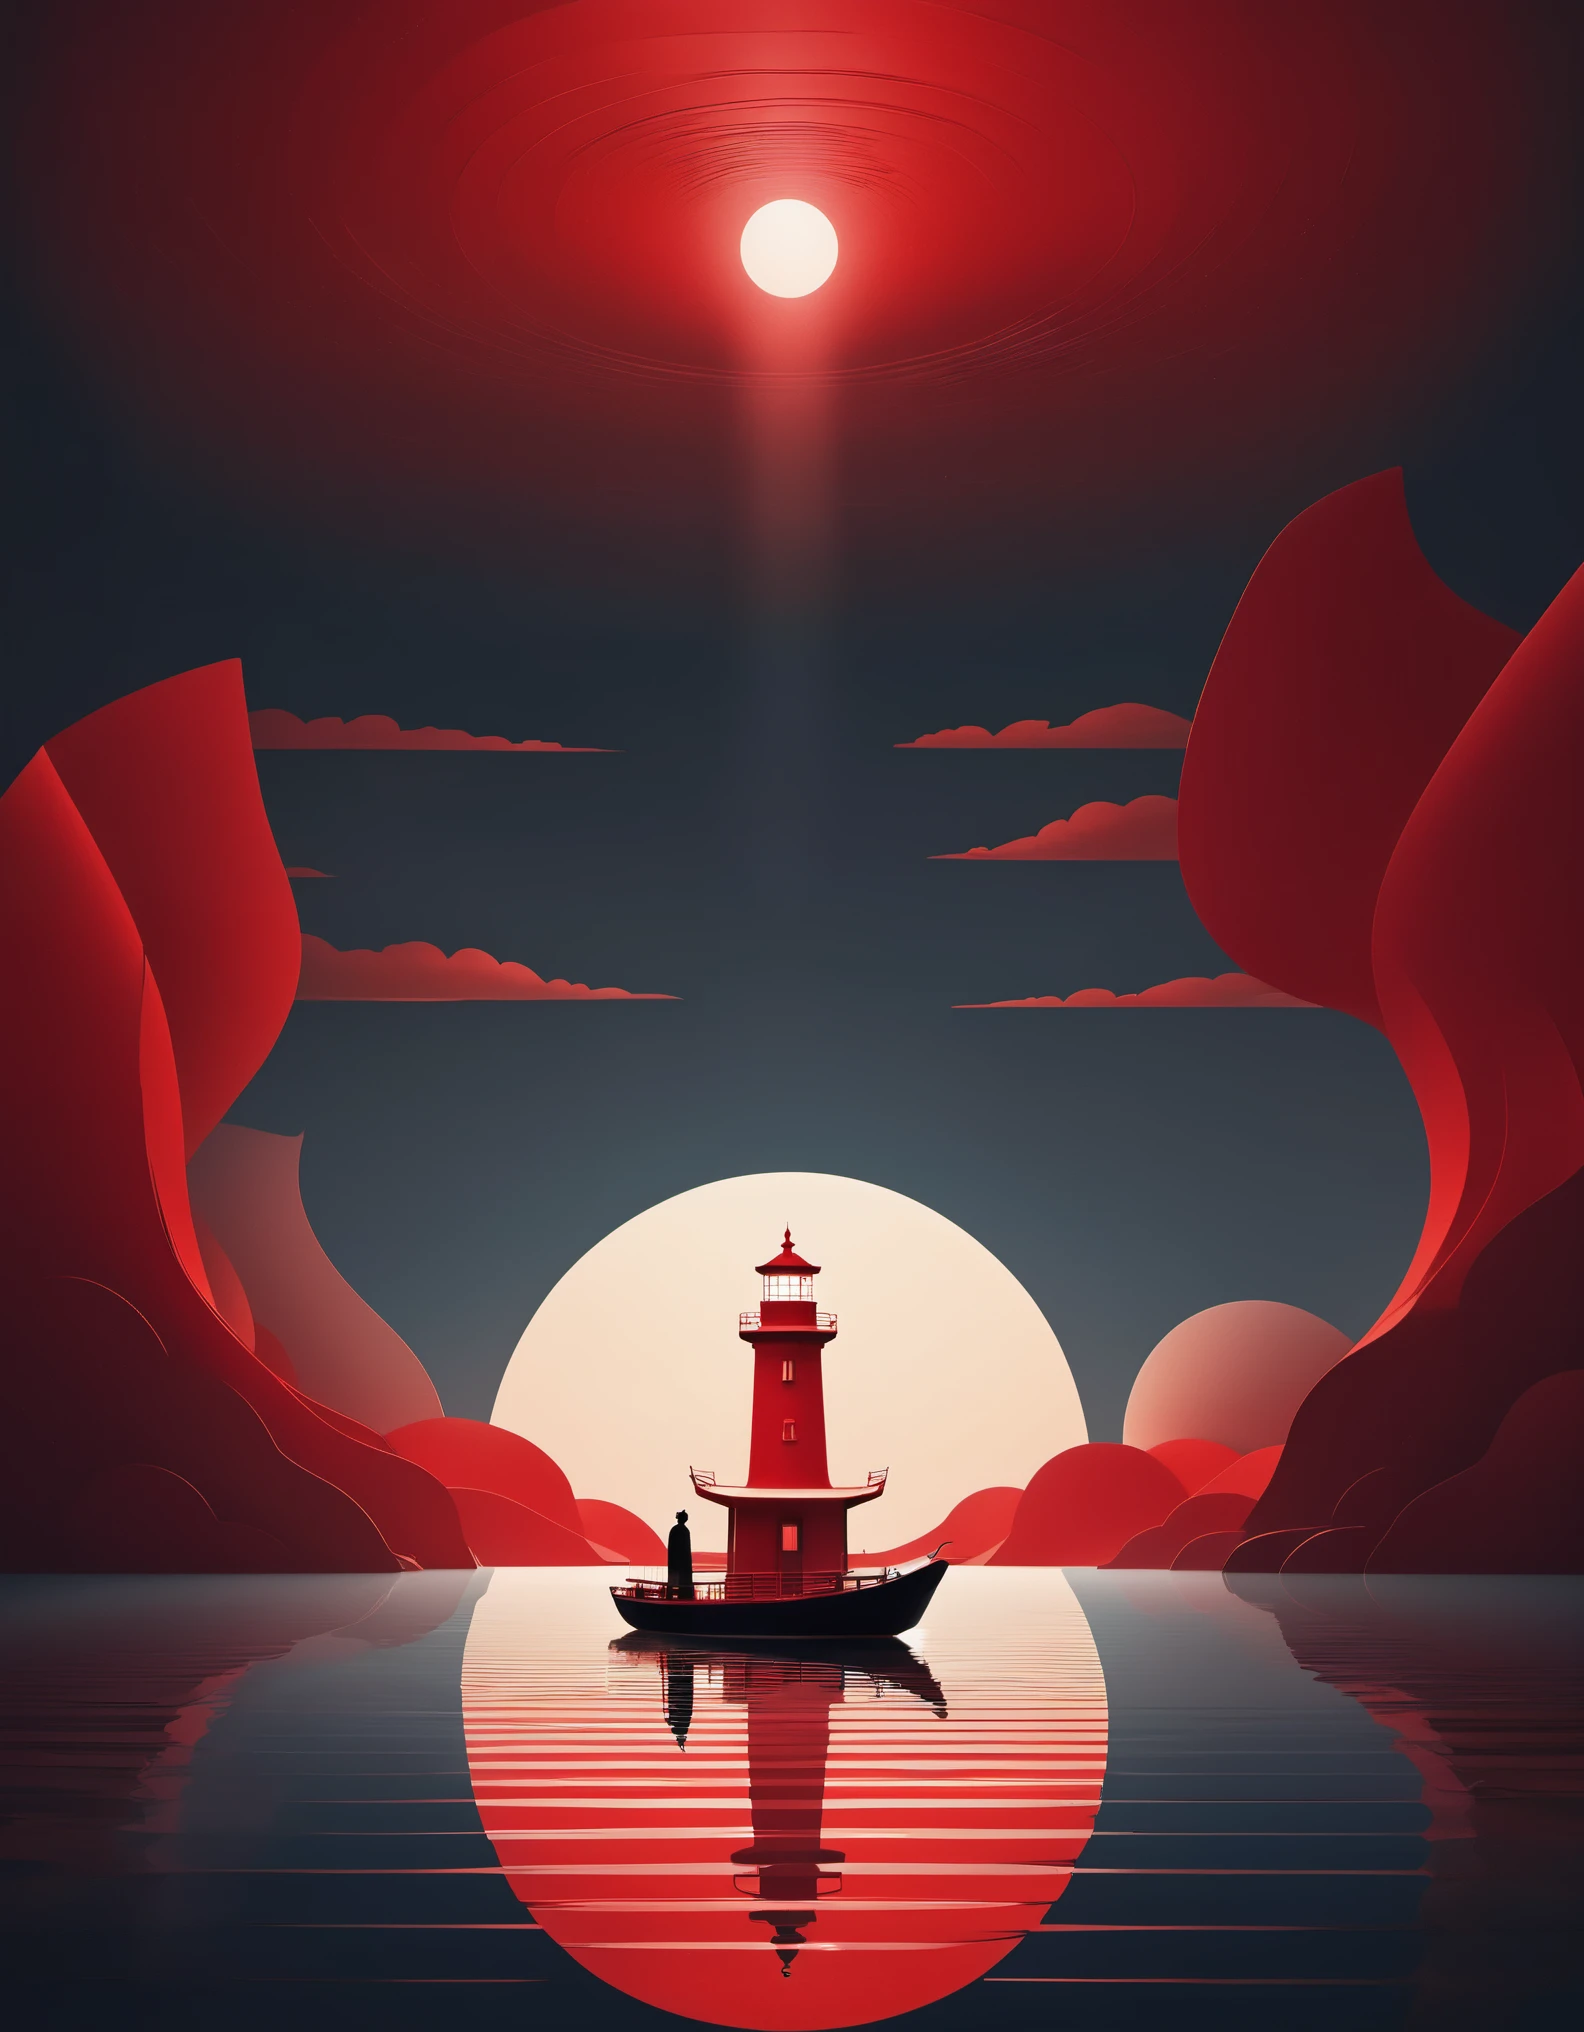 赤い灯台と船, 明るい光を発する，ボートの上に立っている人と, 4D映画で表現された東洋のミニマリストスタイル. コンセプチュアルアート, 商王朝, 平和で瞑想的な気持ち, ミニマリストのステージデザイン